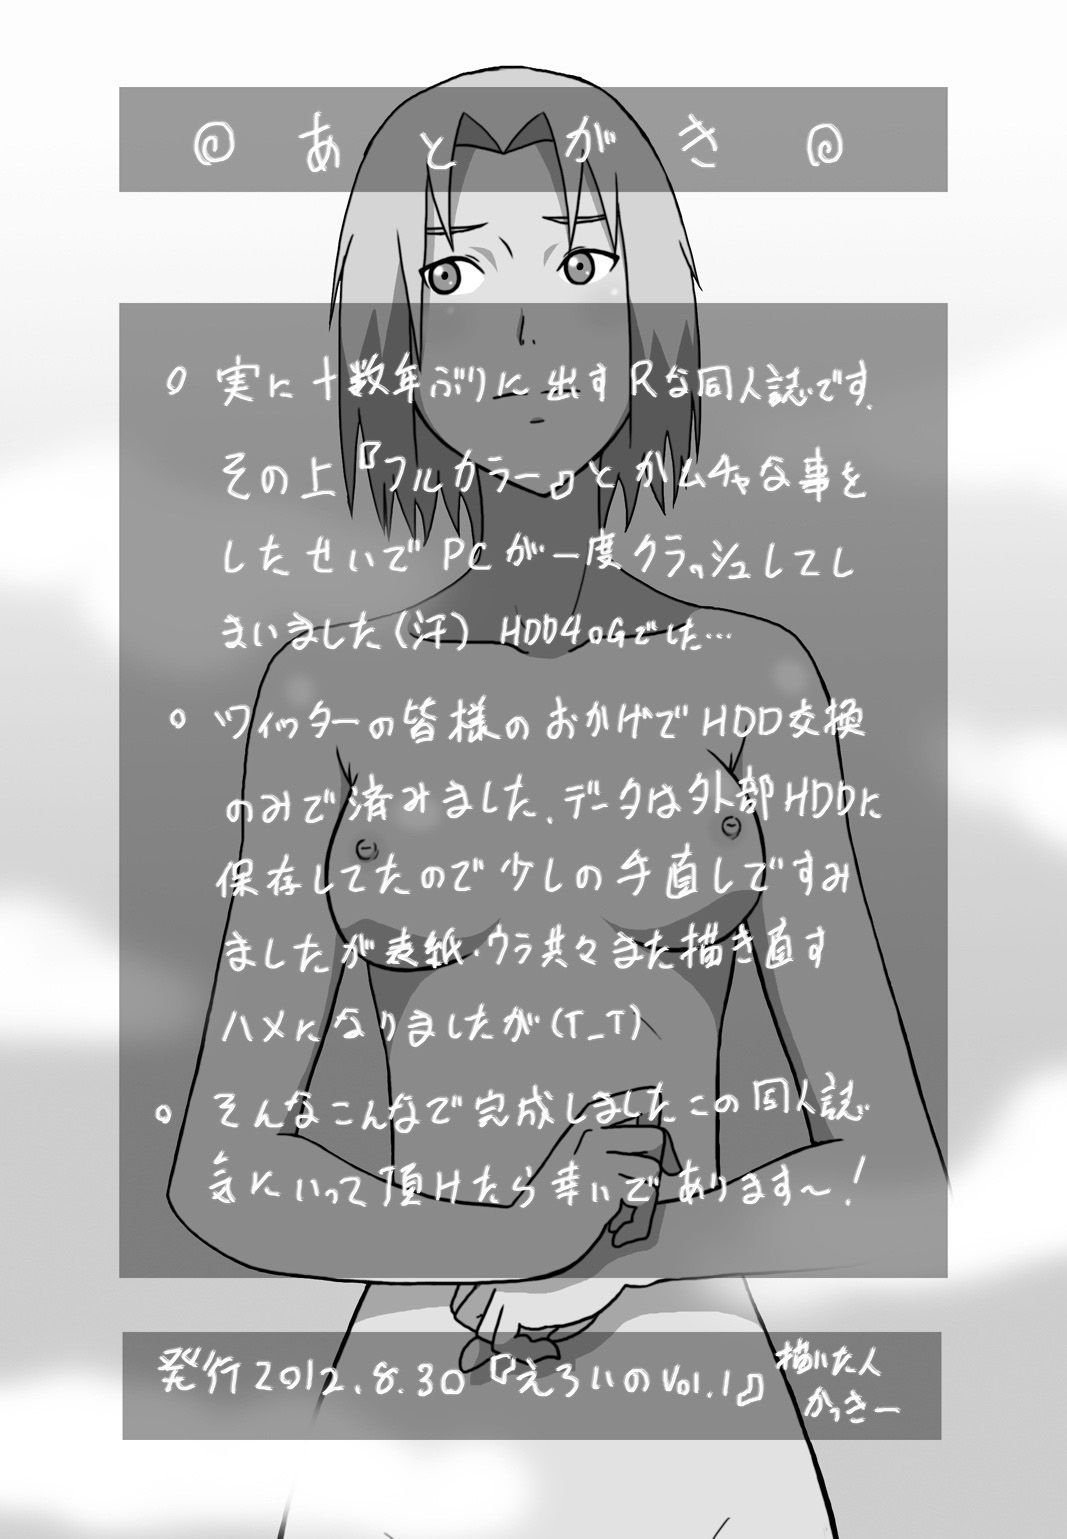 kakkii dou 에로이 광장 no vol.1 (naruto) biribiri 부품 2